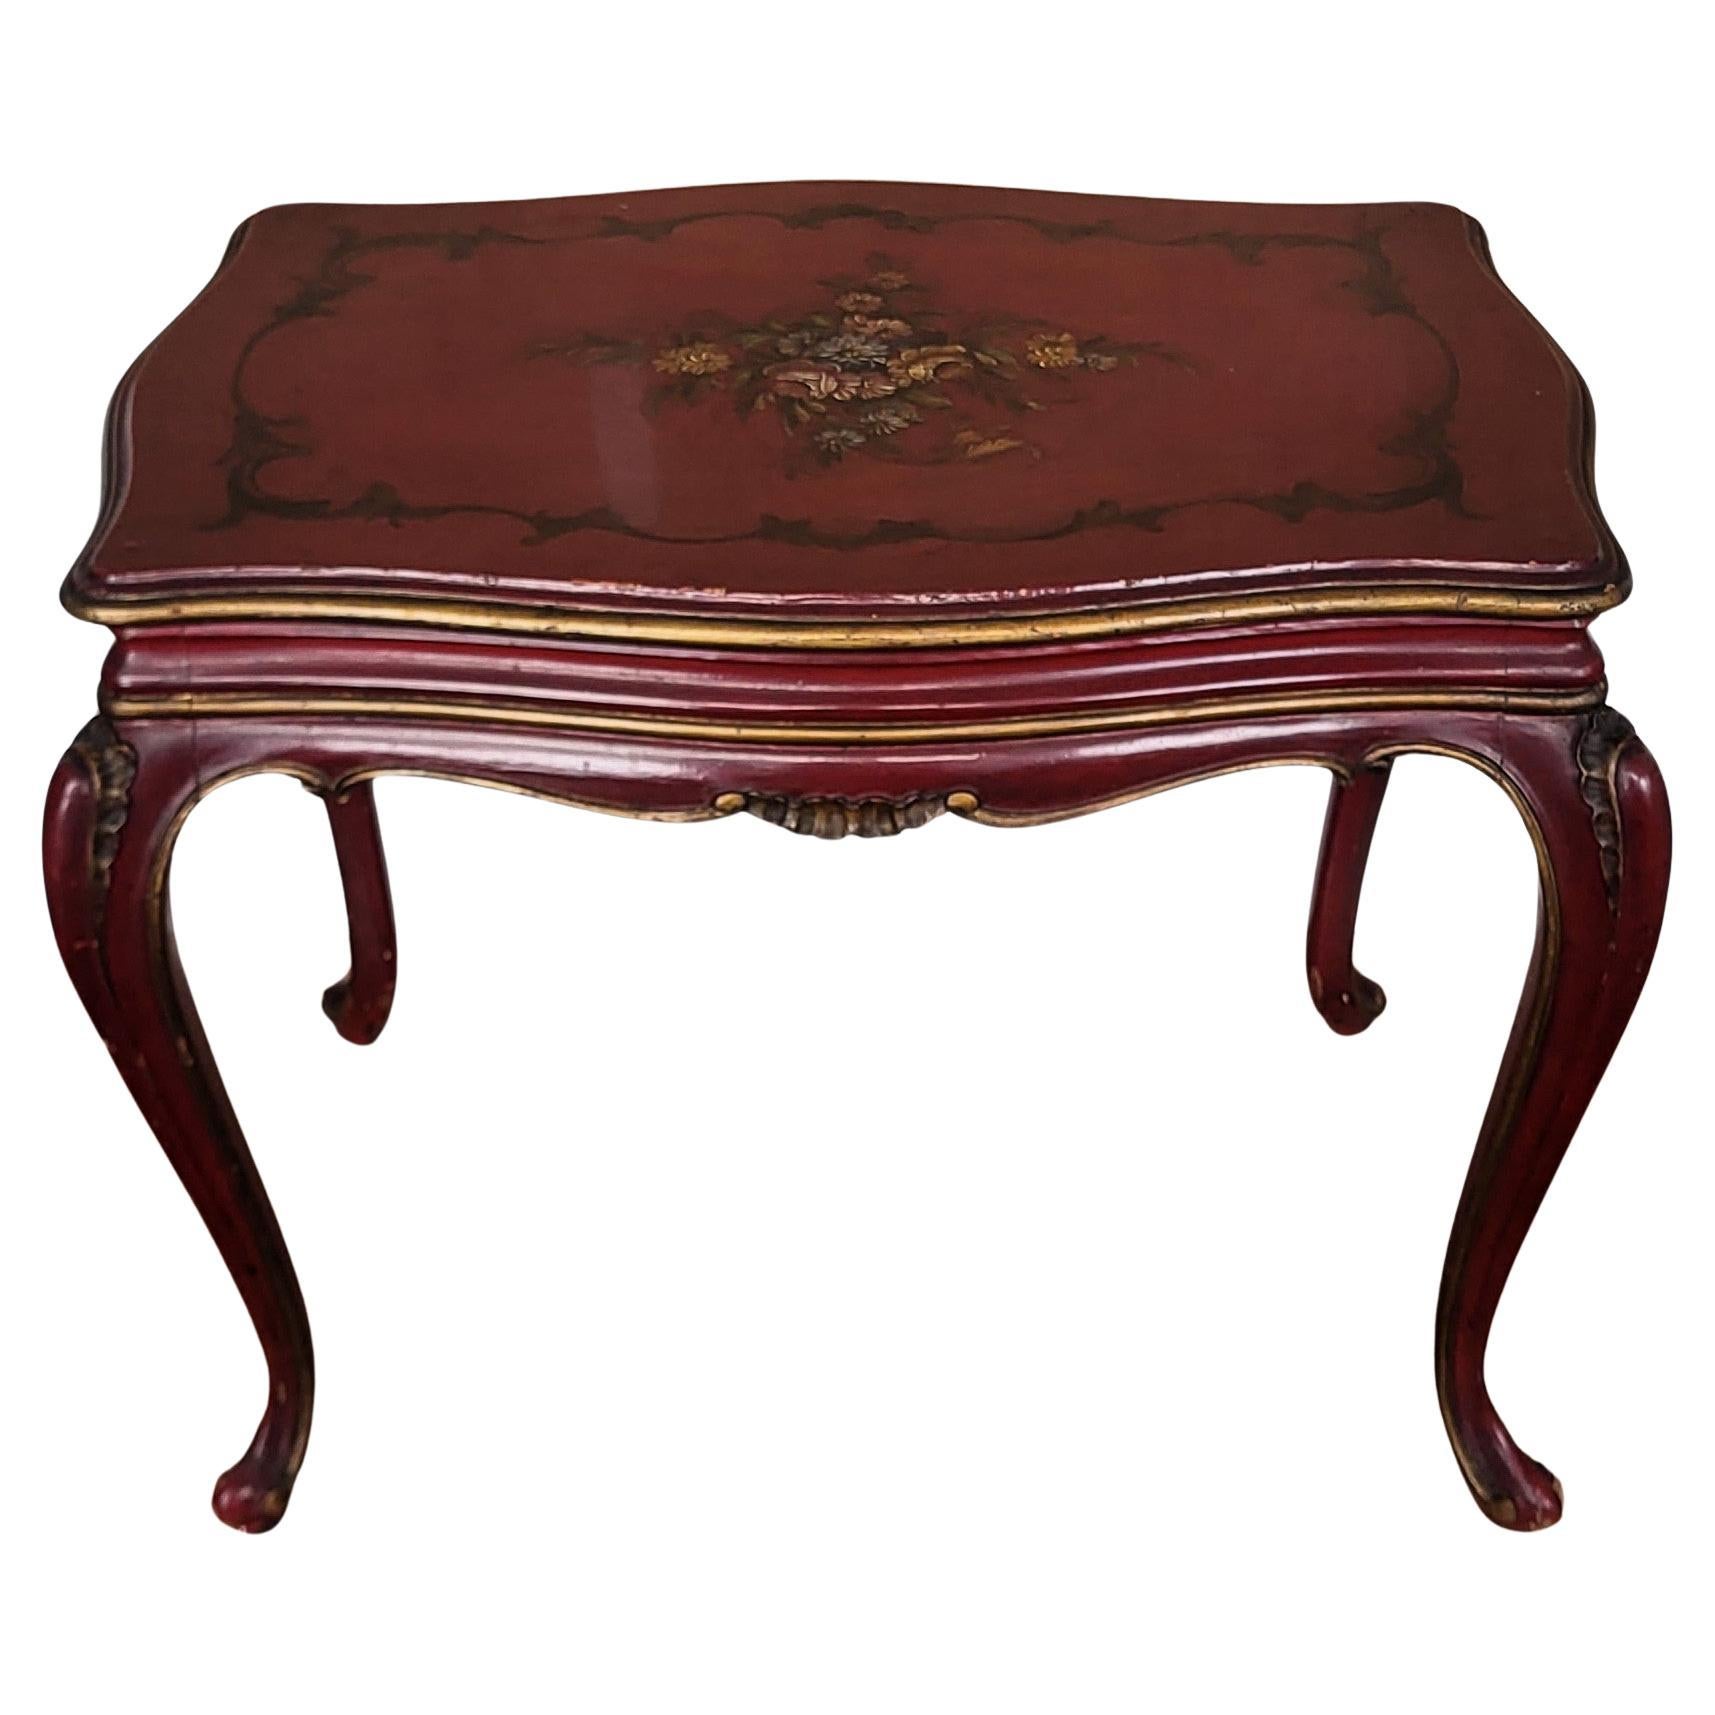 Table de canapé ou table d'appoint néoclassique italienne en noyer Chinoiserie Rouge Bordeaux